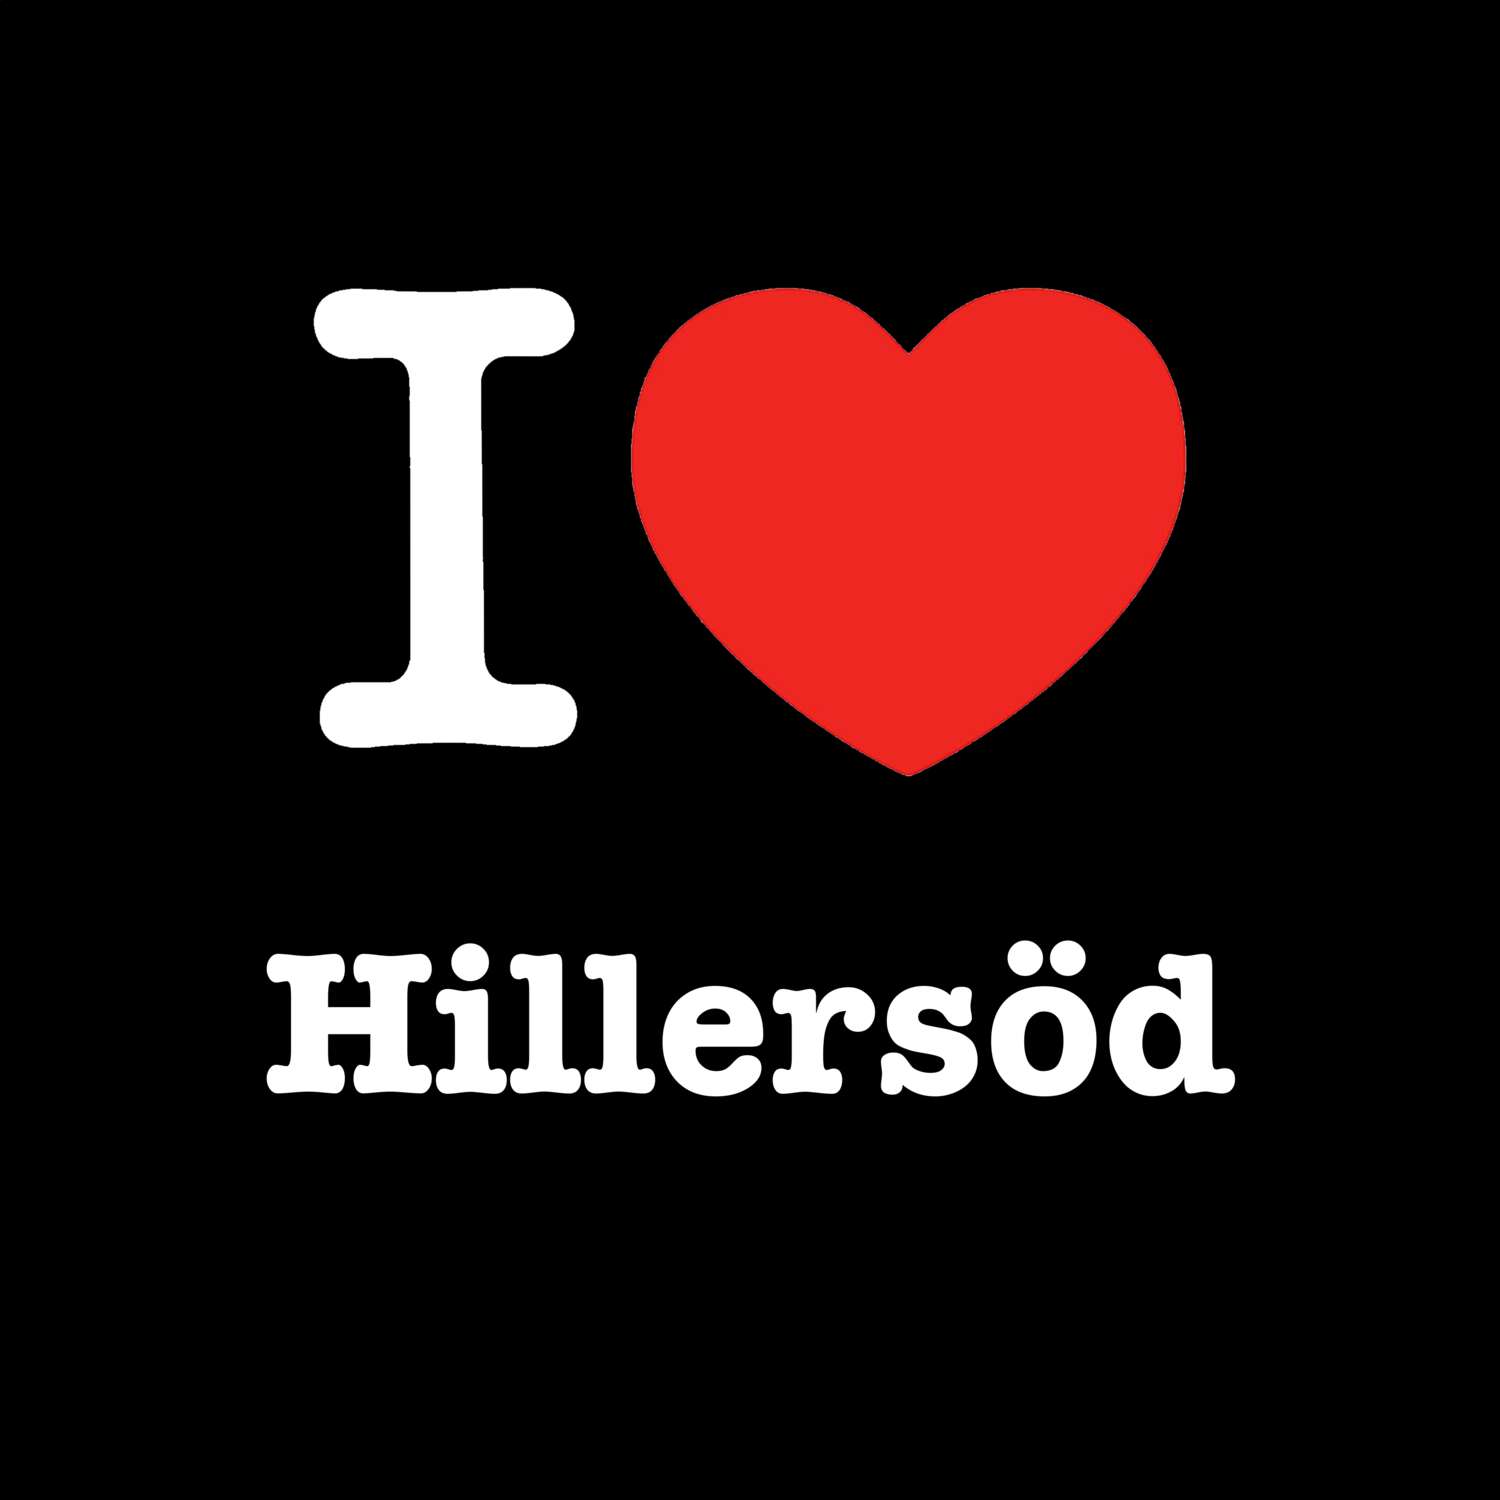 Hillersöd T-Shirt »I love«